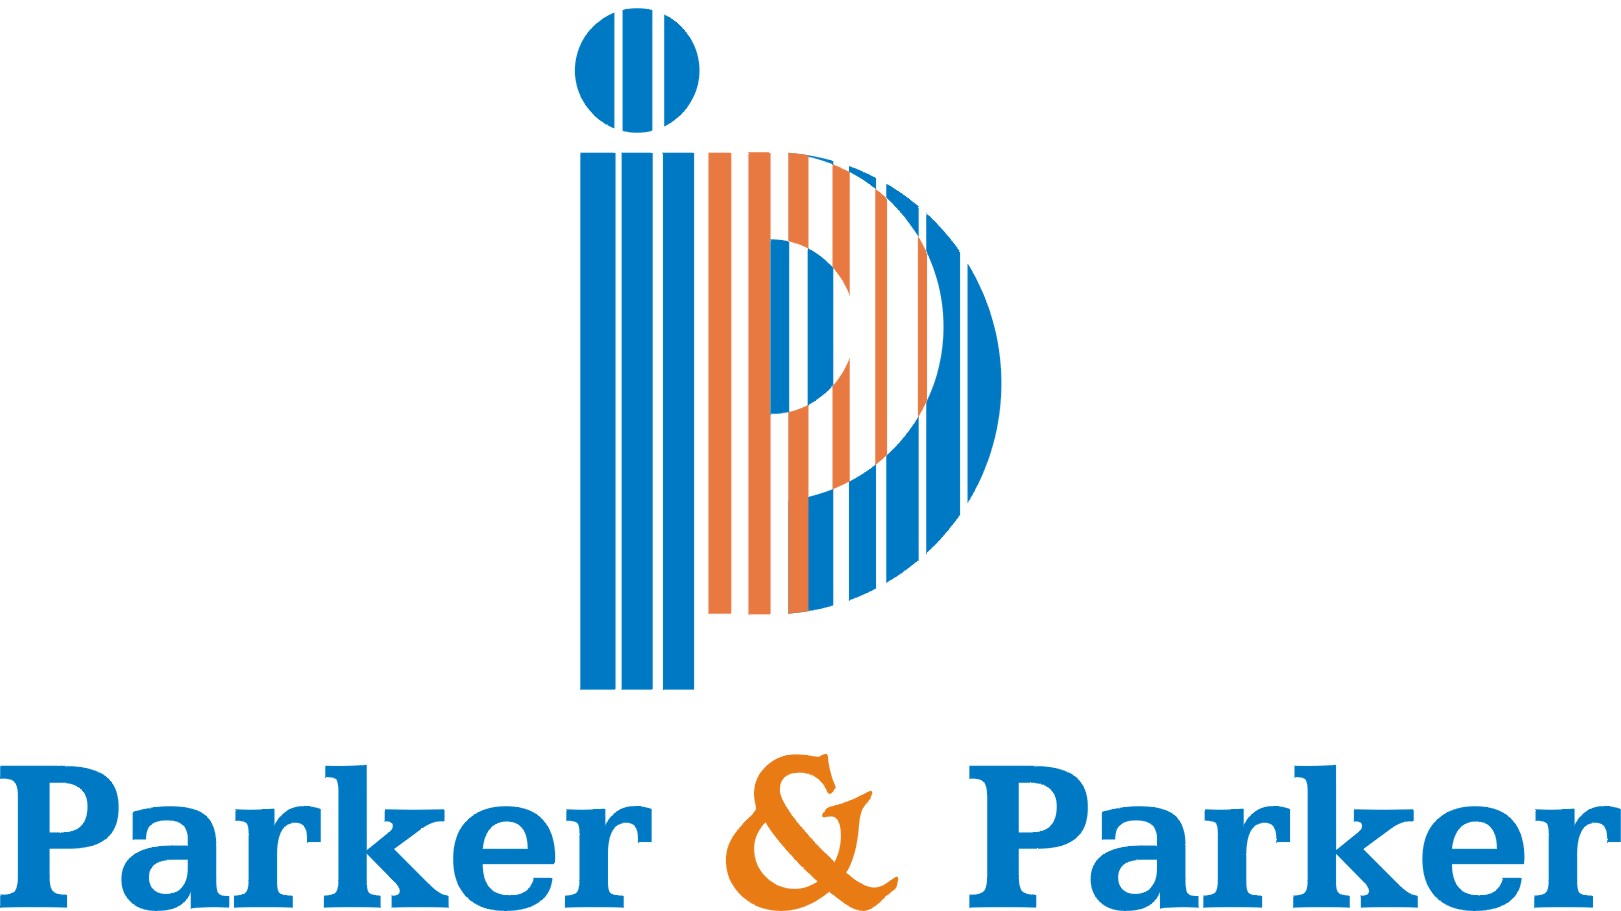 PARKER & PARKER COMPANY